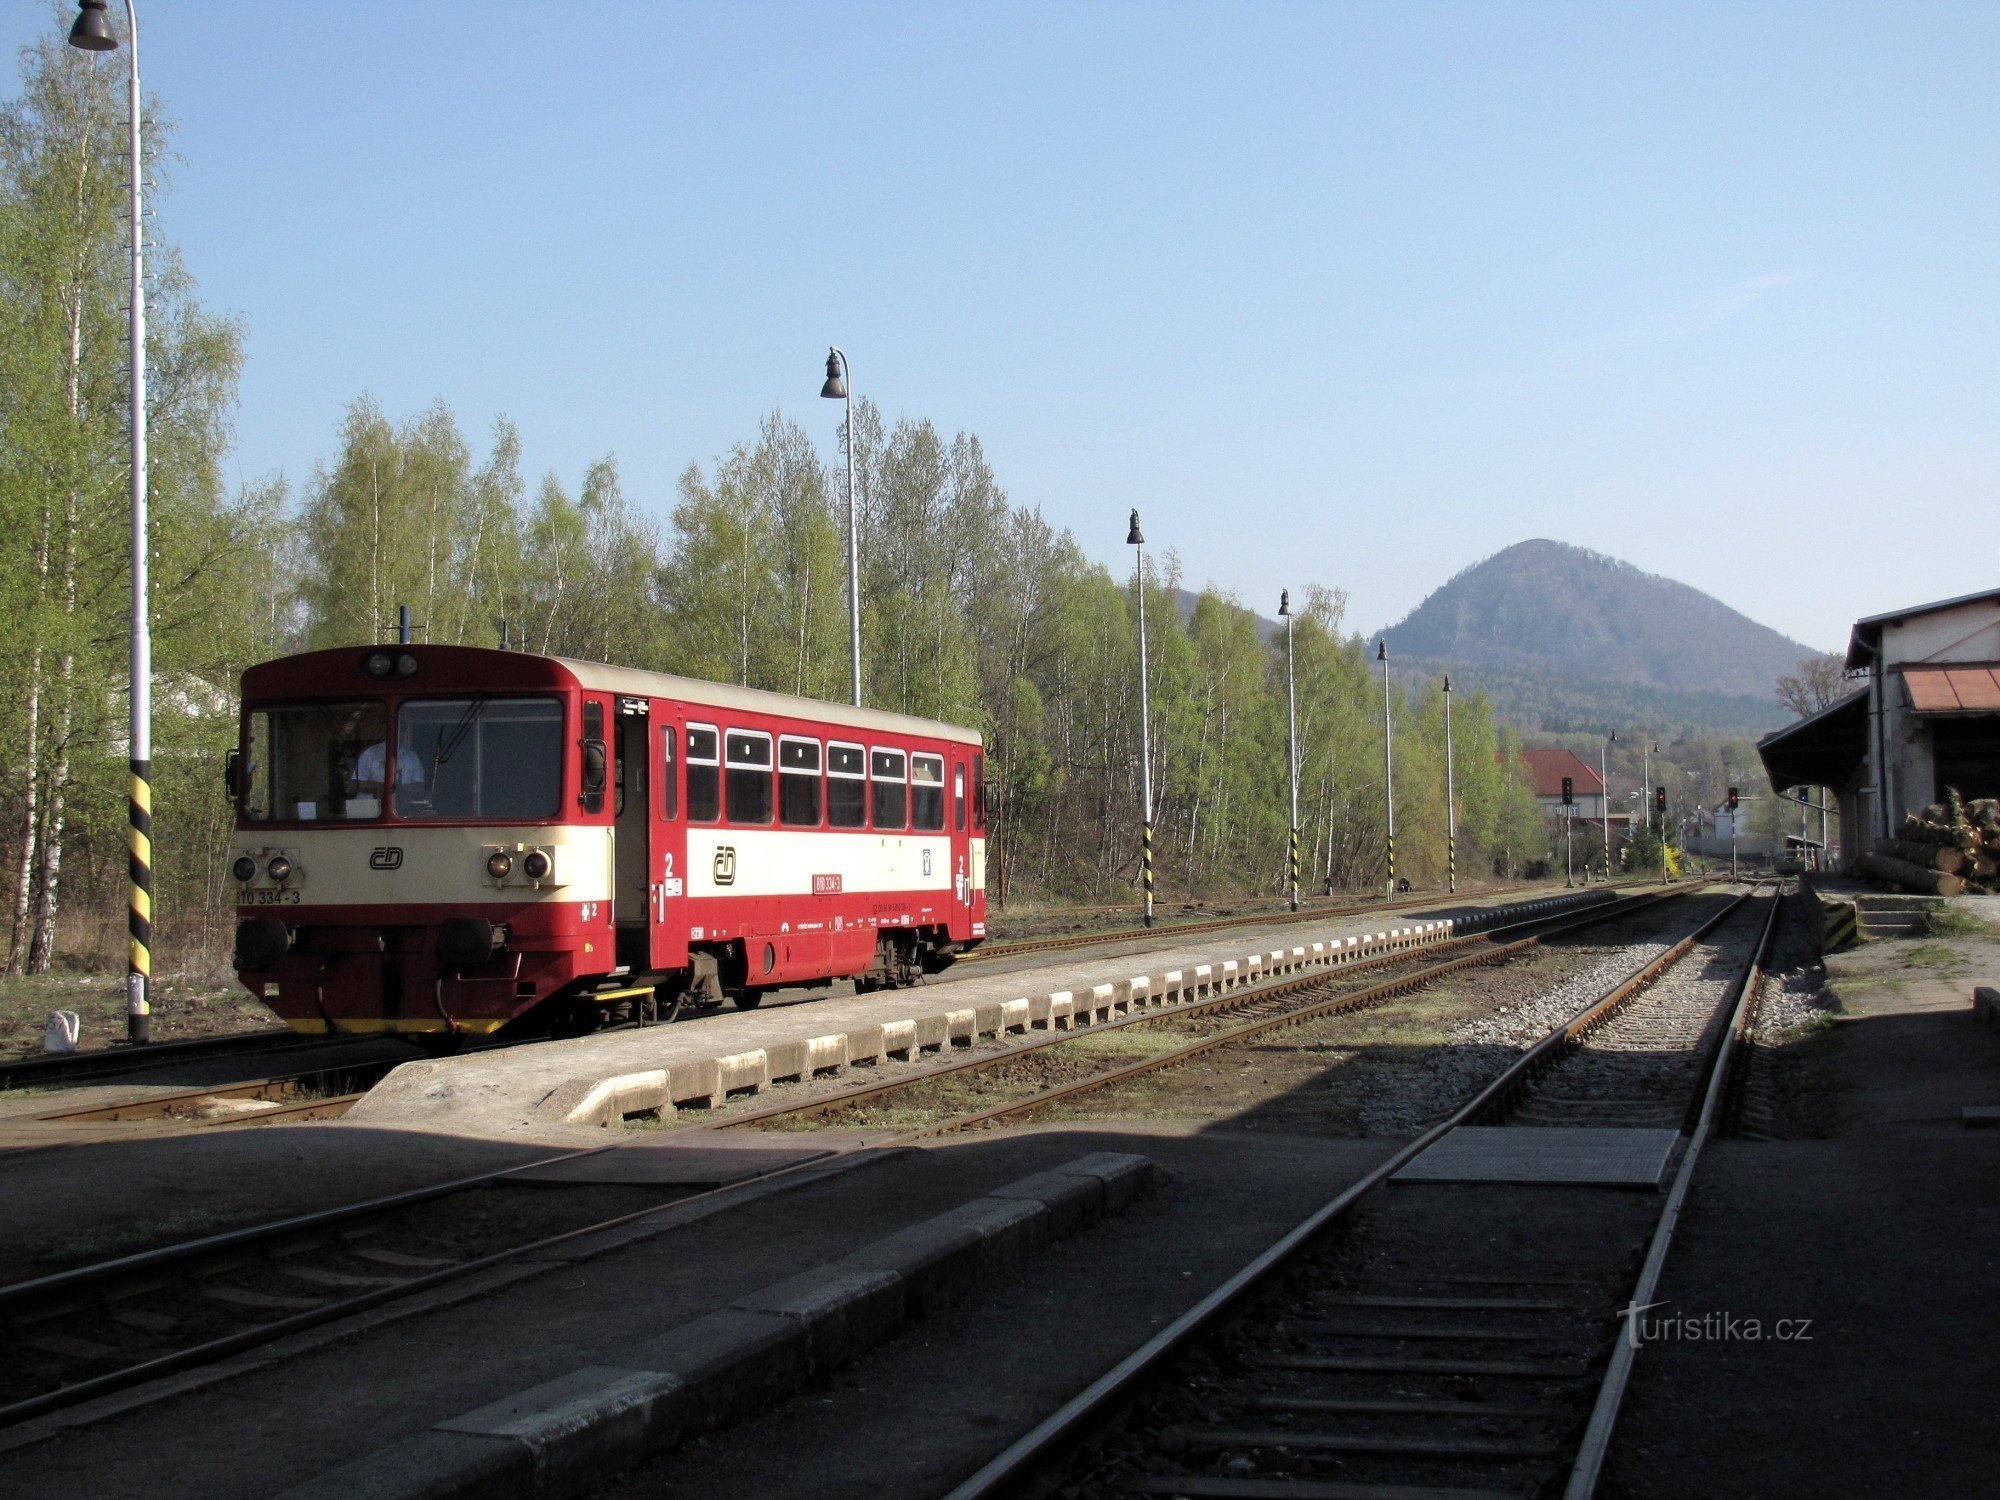 Piattaforma, sullo sfondo il monte Klíč